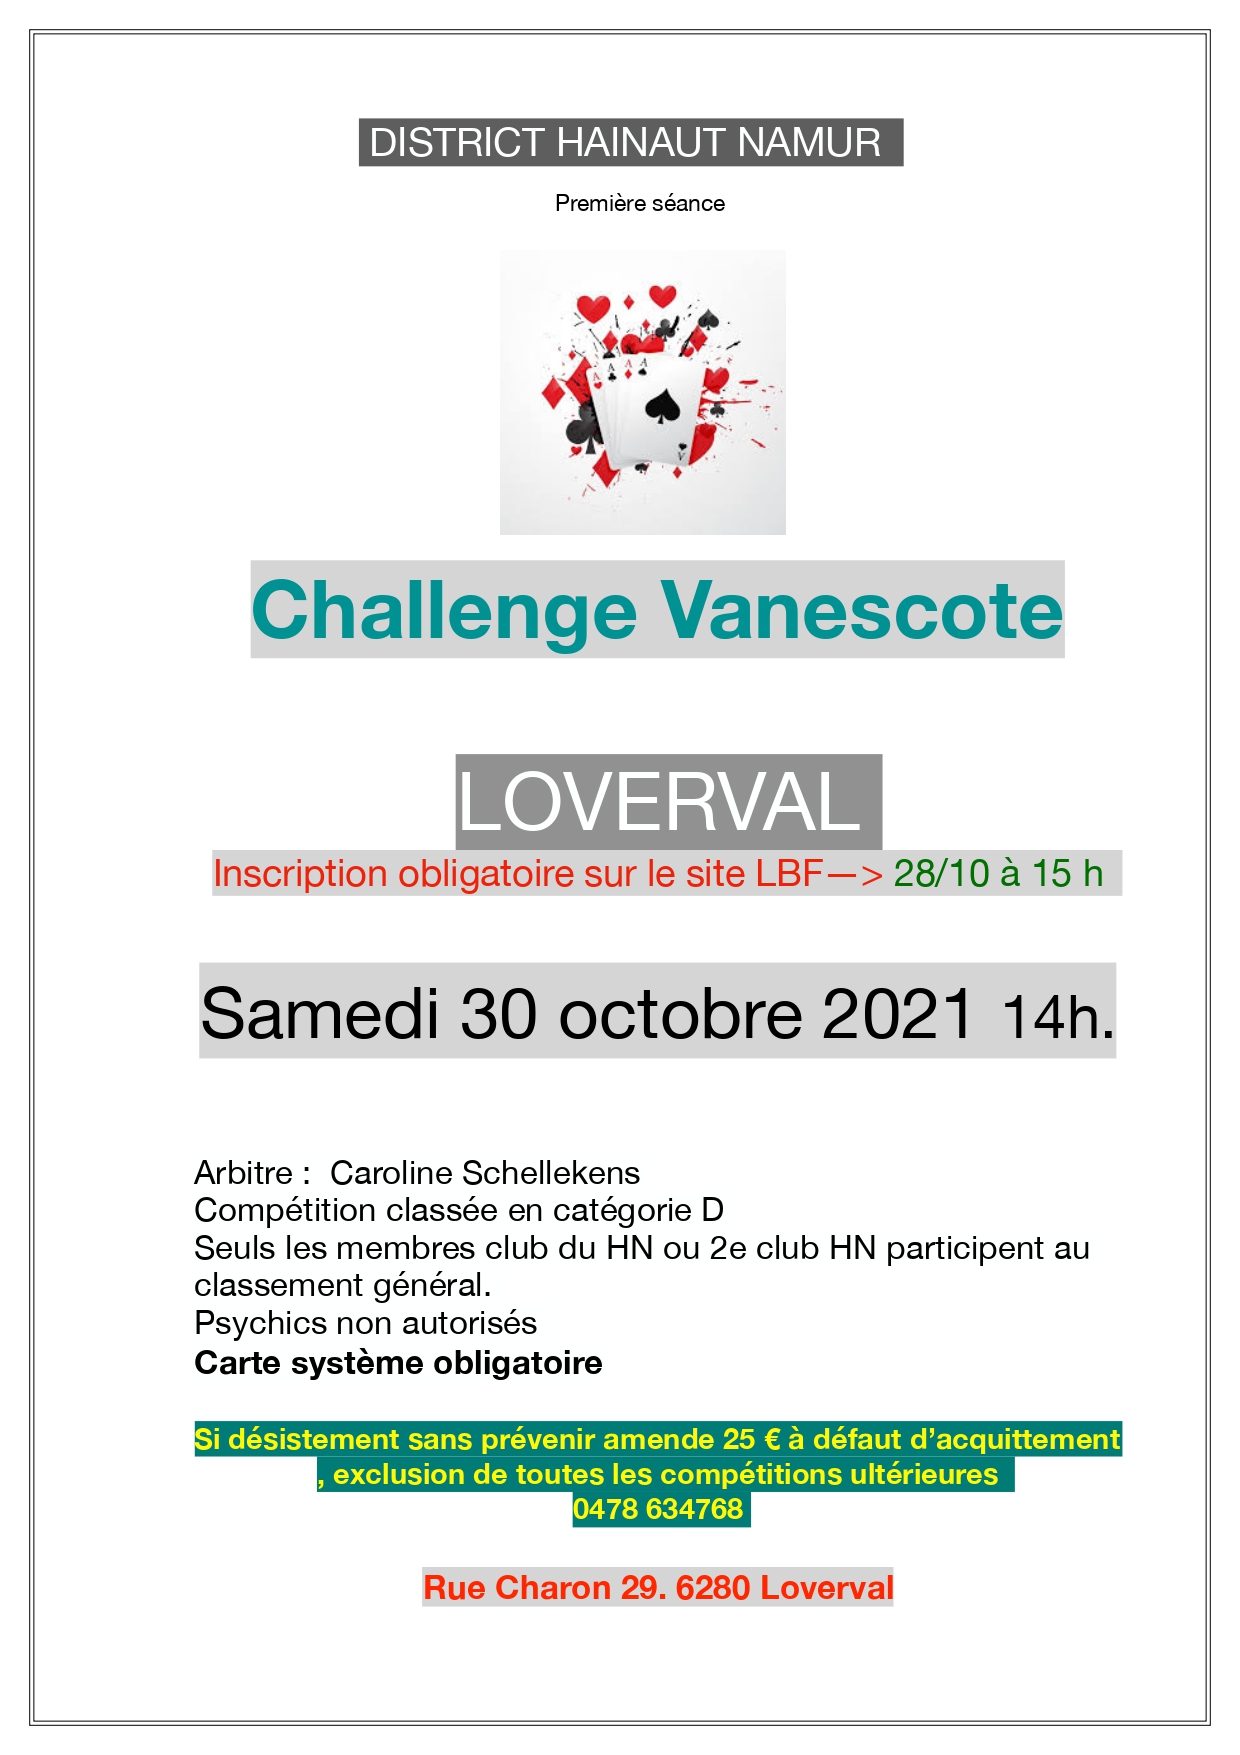 affiche-challenge-vanescote-loverval.jpg